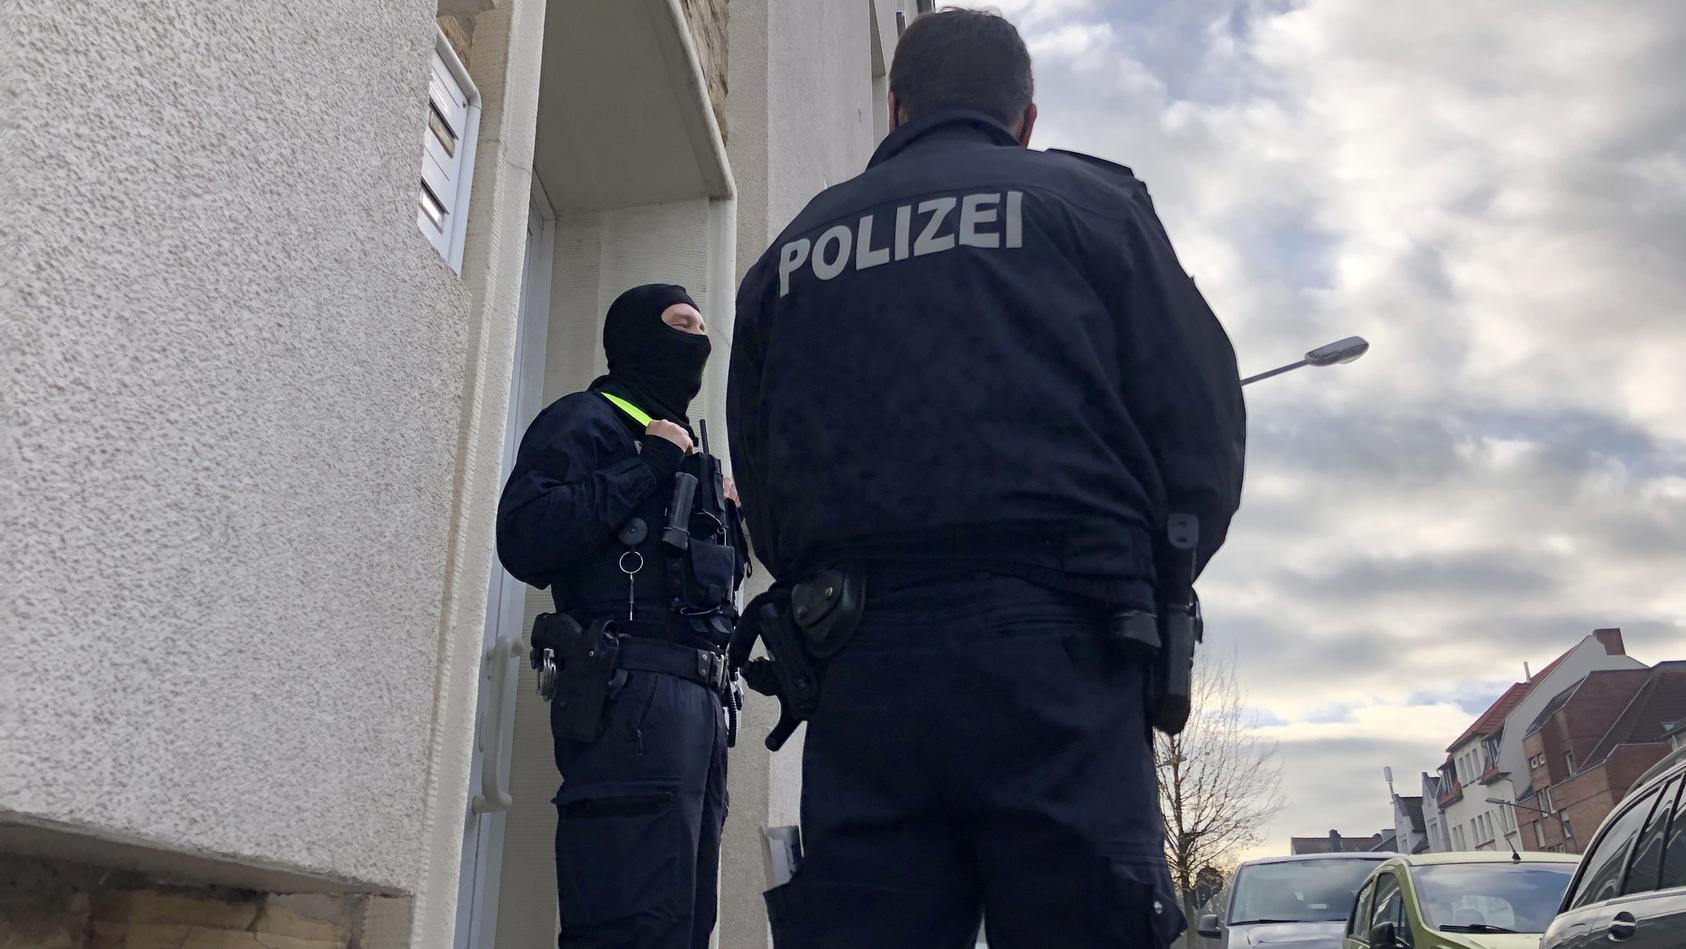 06.11.2020, Niedersachsen, Osnabrück: Polizisten stehen im Rahmen einer Durchsuchung vor einem Wohnhaus. Nach dem islamistischen Terroranschlag von Wien haben Ermittler am Freitagmorgen die Wohnungen von vier jungen Männern in Deutschland durchsucht.